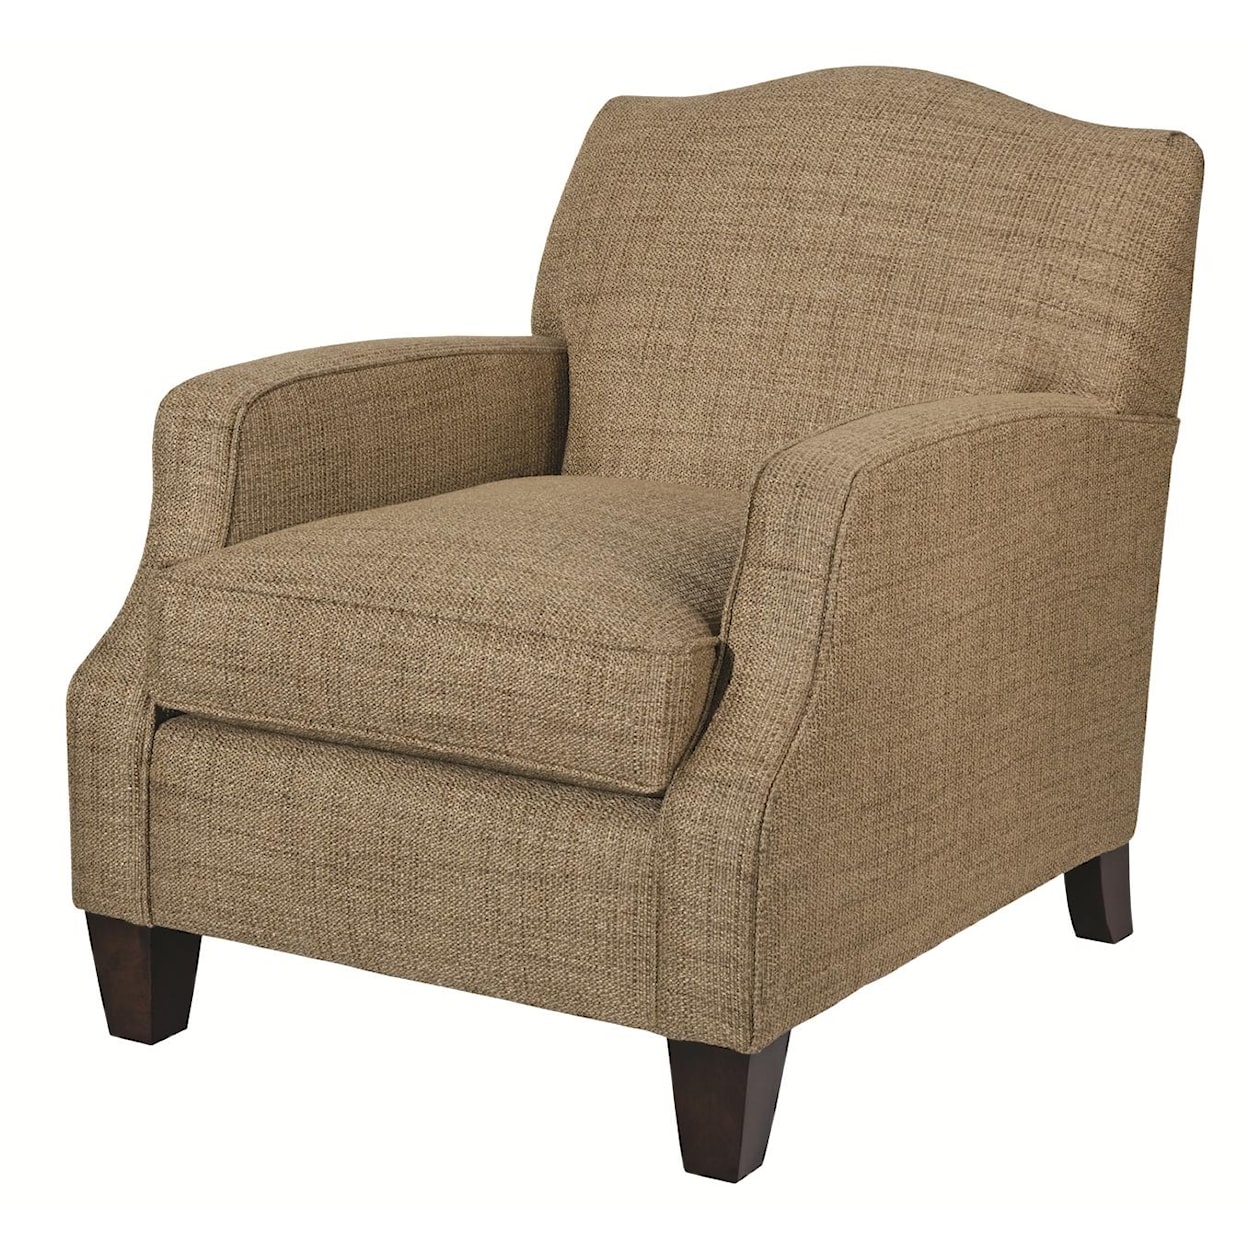 Kincaid Furniture Accent Chairs Conran Chair